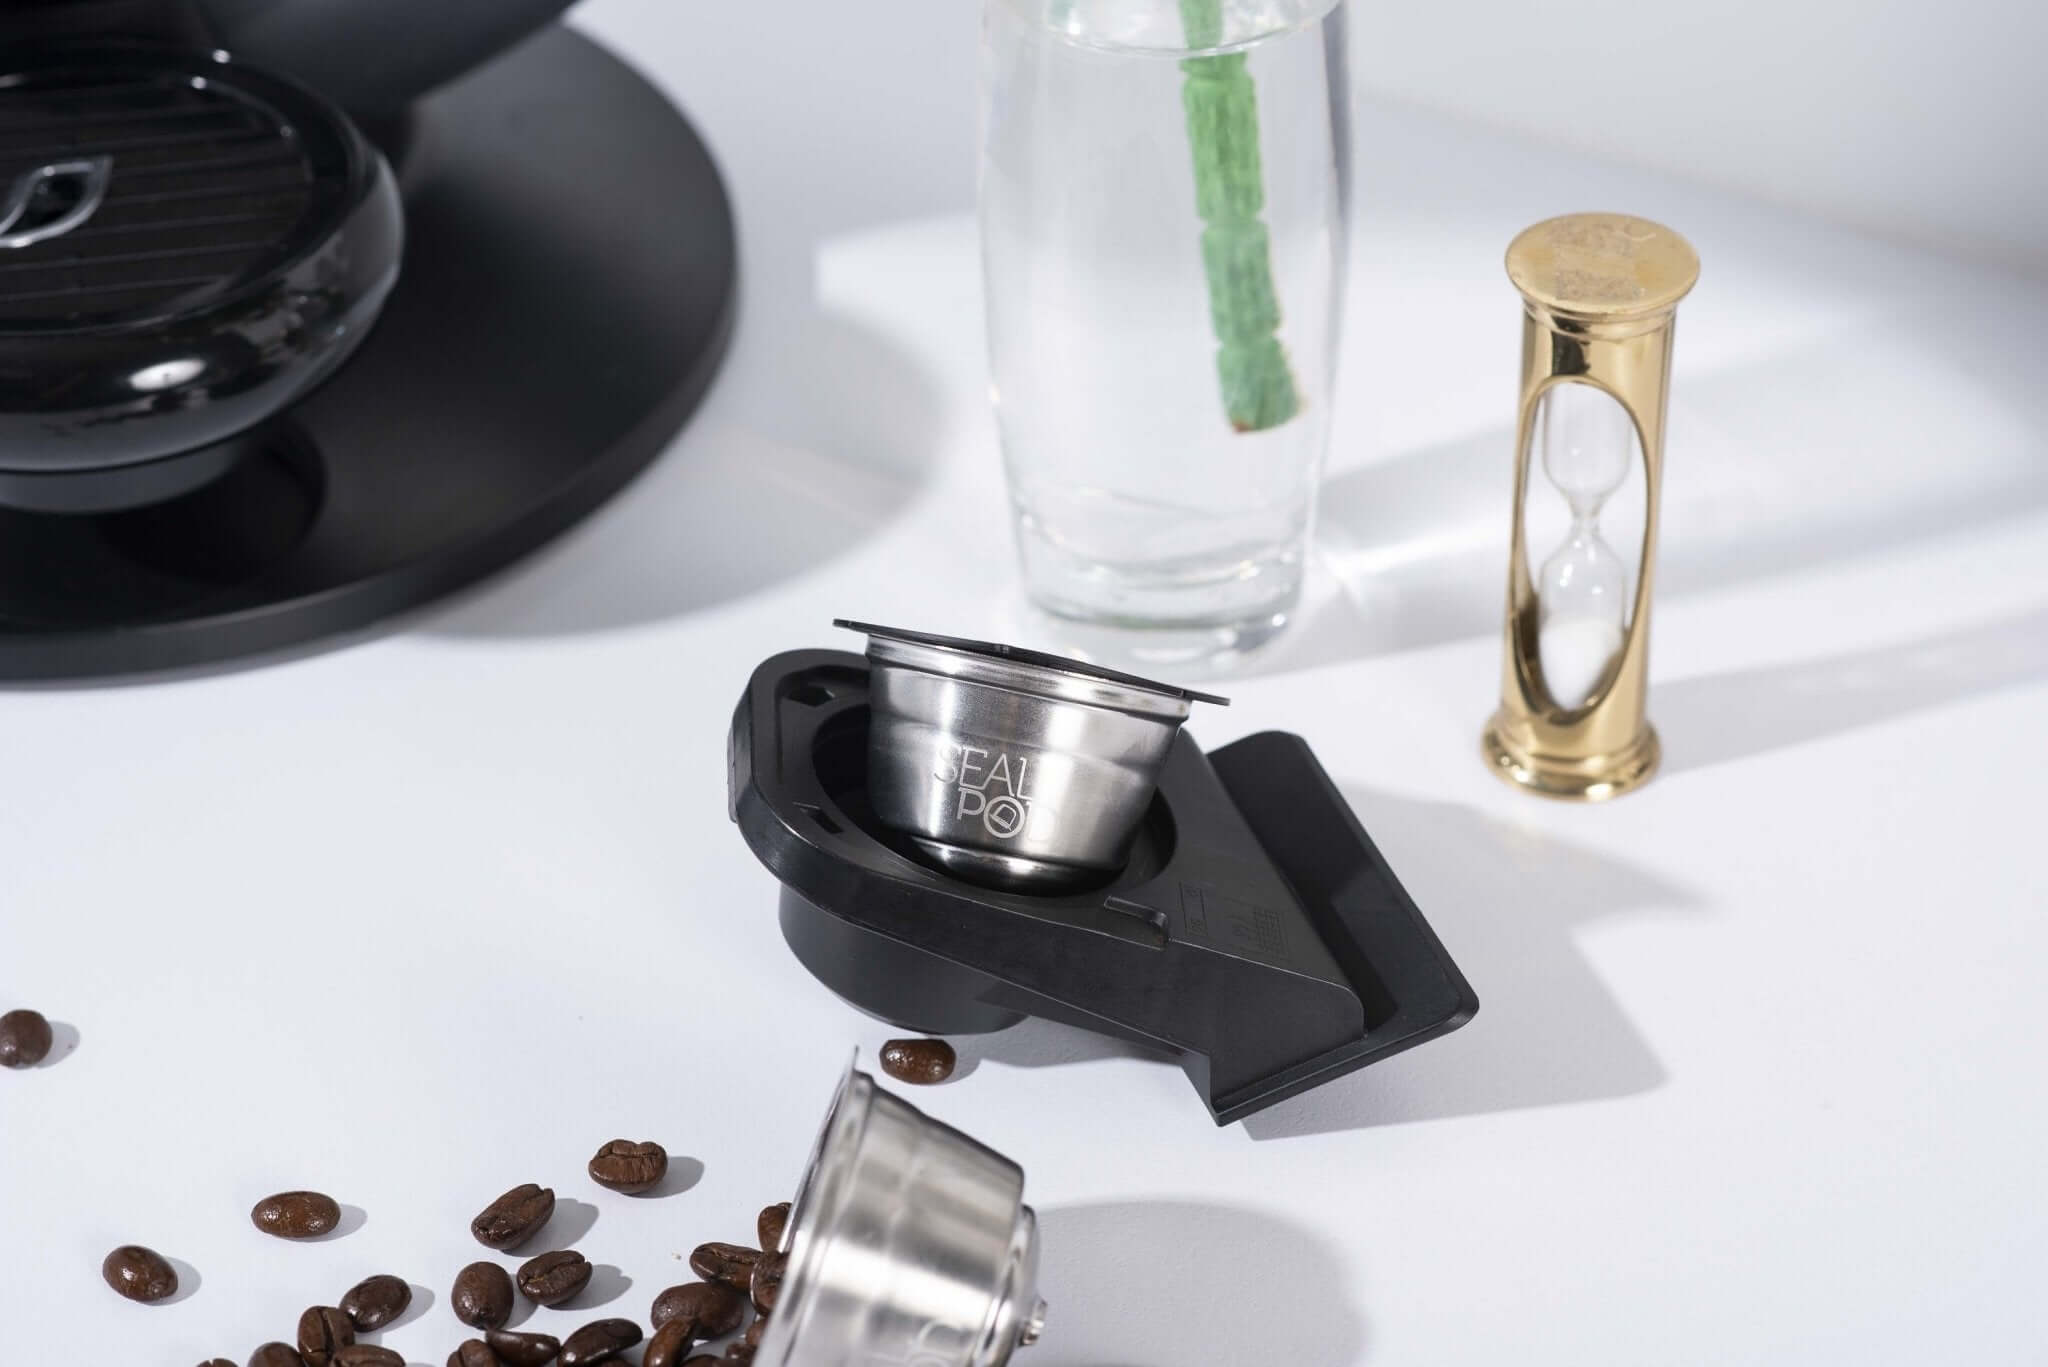 SEALPOD Dolce Gusto Cápsulas reutilizables, cápsulas de café recargables  compatibles con máquina Nescafe Dolce Gusto, acero inoxidable duradero